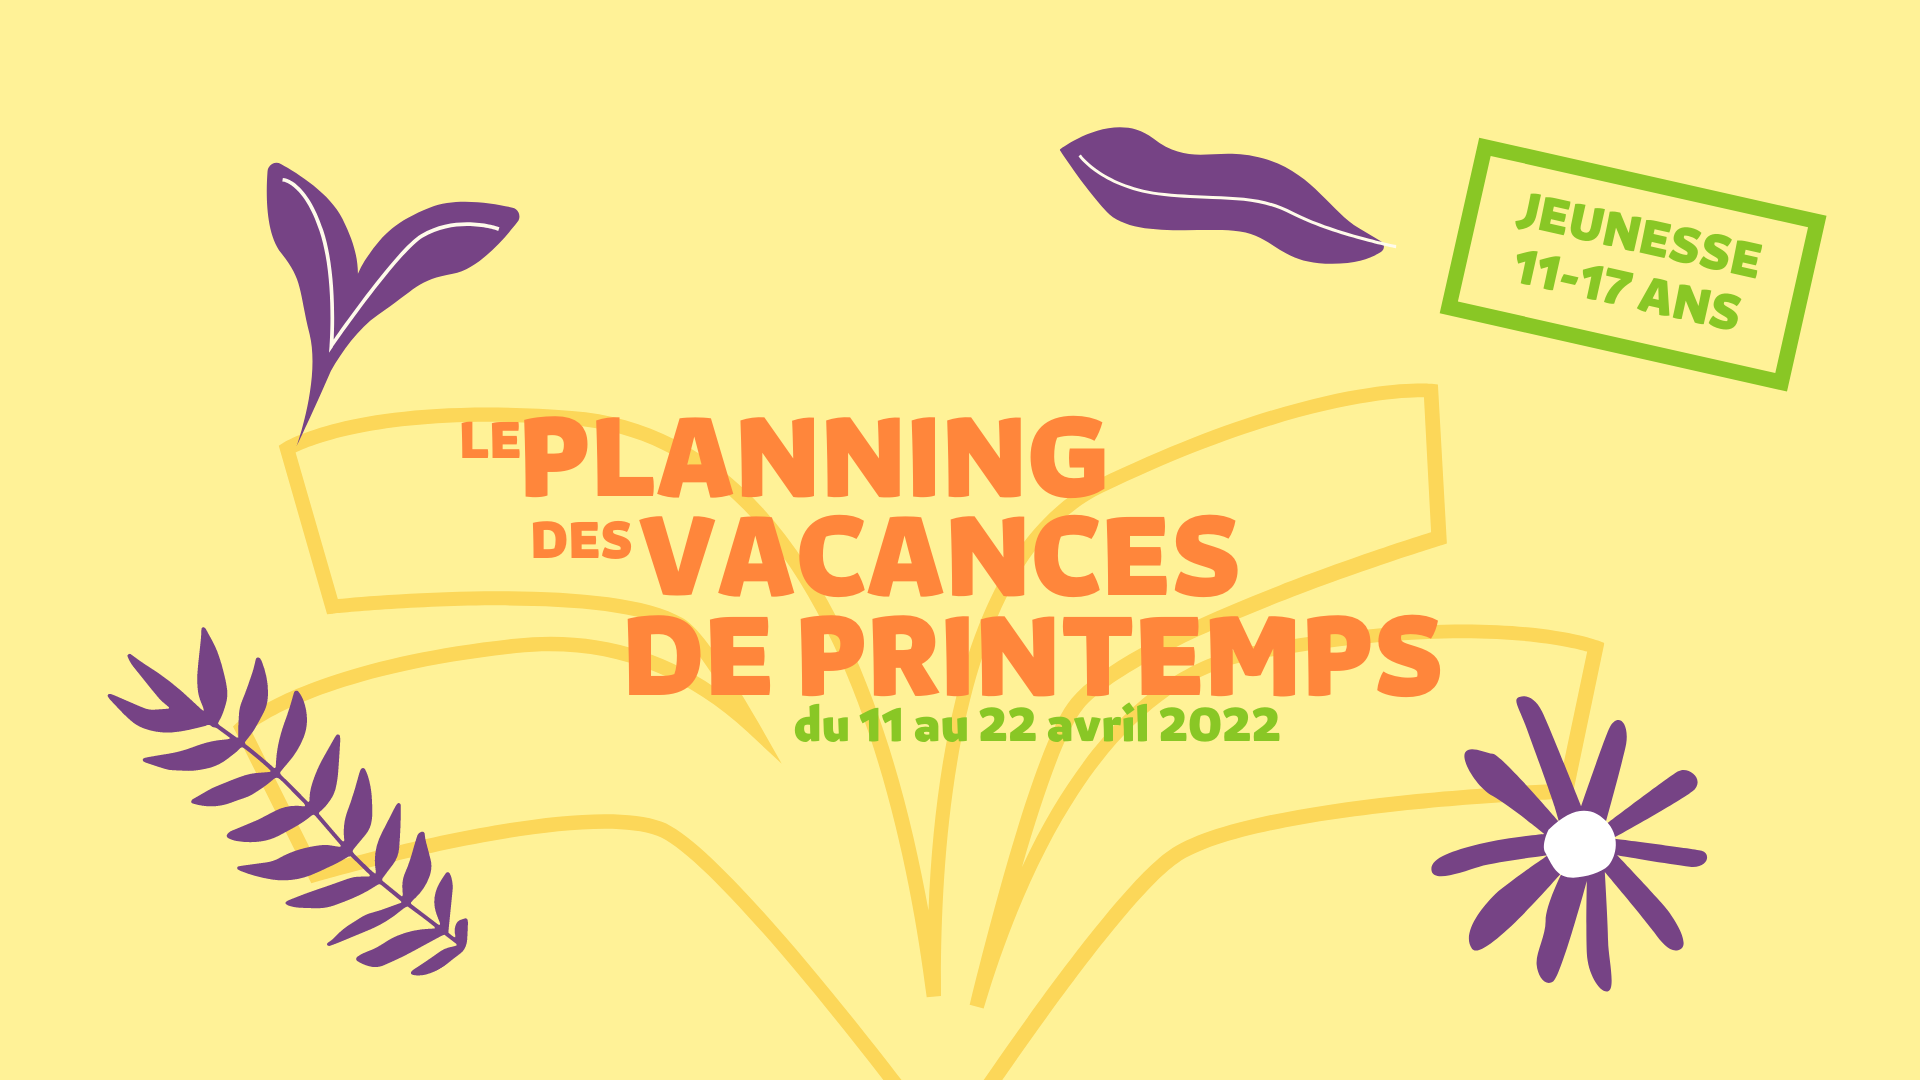 You are currently viewing Planning des vacances de Printemps (du 11 au 22 avril 2022) – Jeunesse 11/17 ans